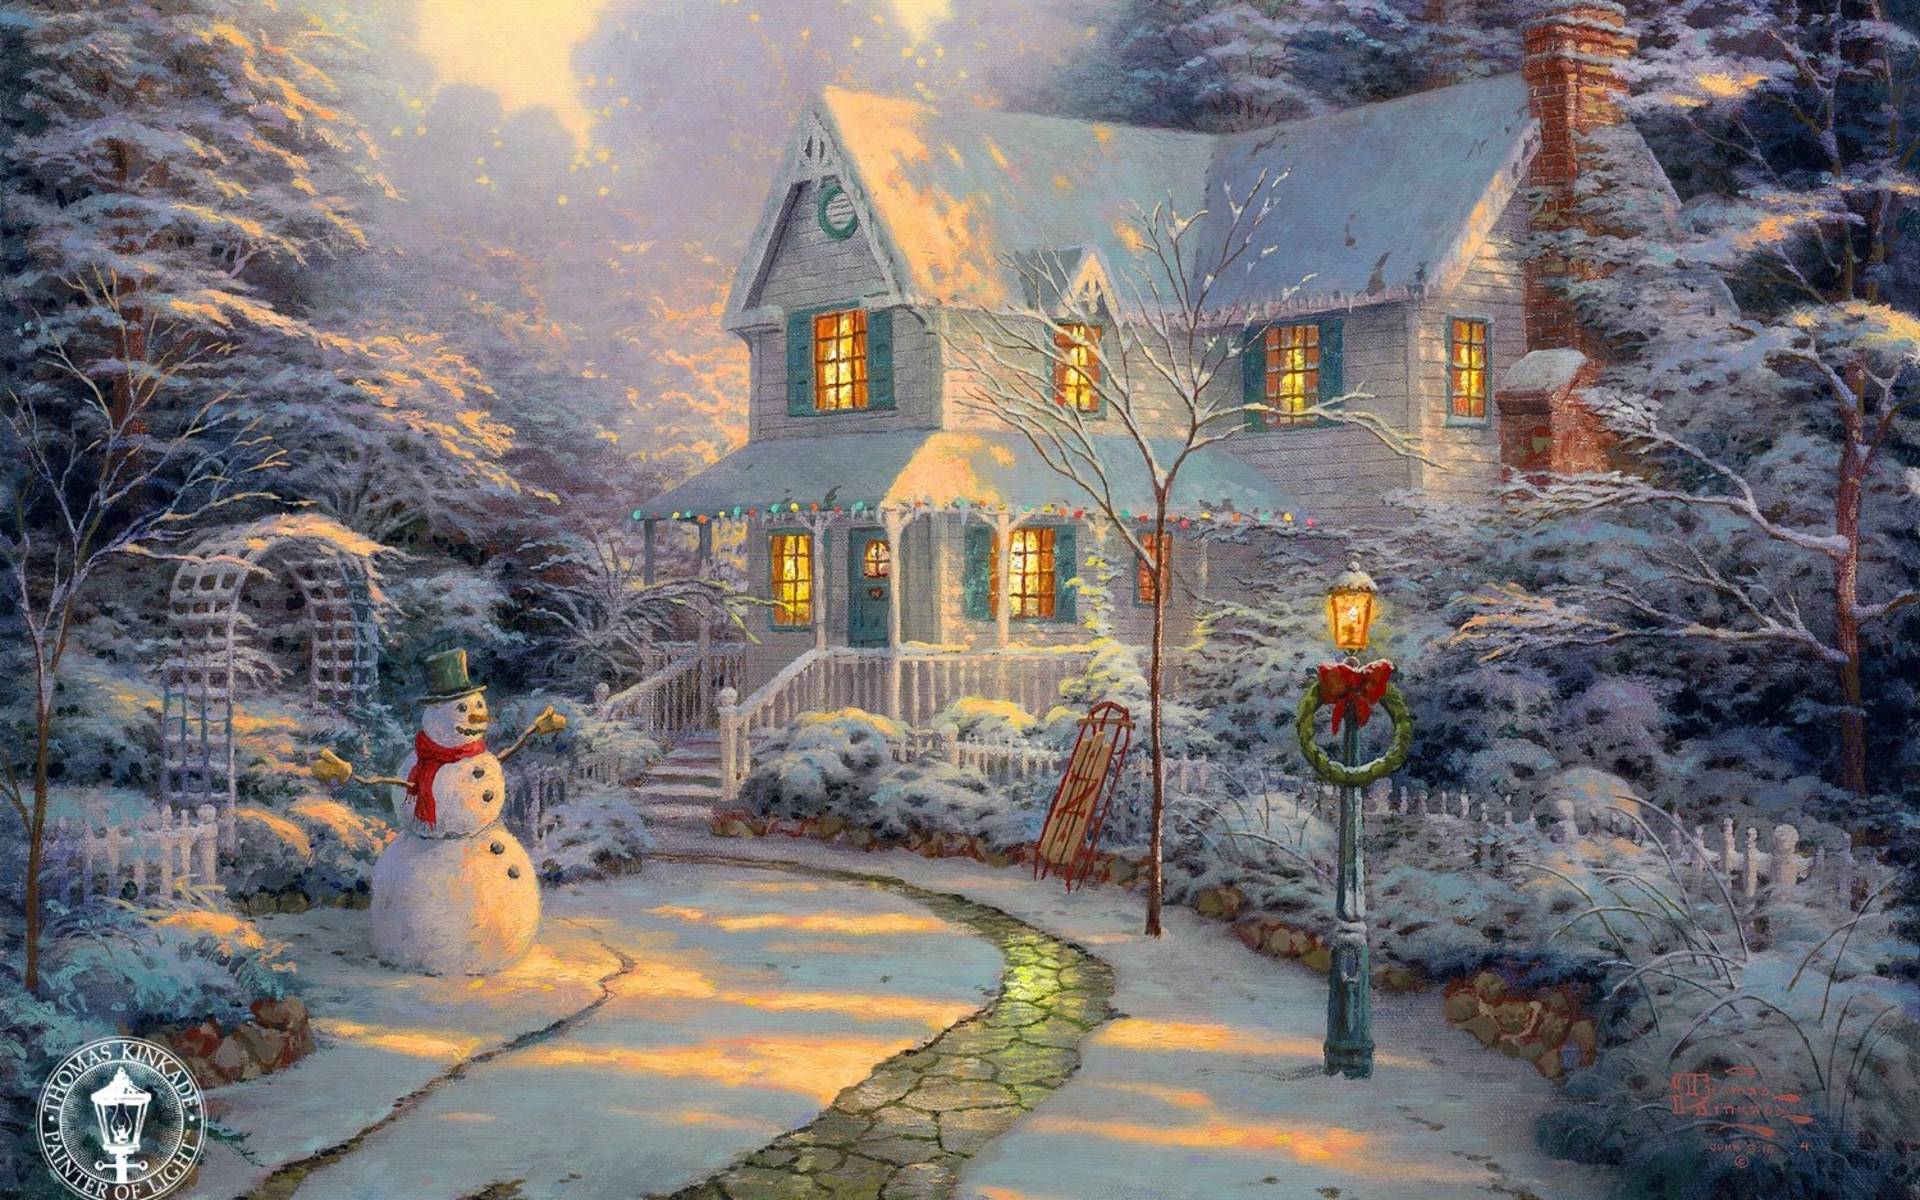 Thomas Kinkade: Hãy cùng thưởng thức những bức tranh tuyệt đẹp của họa sĩ Thomas Kinkade, với các đường nét đan xen tinh tế và màu sắc tươi sáng. Cảm nhận được linh hồn và tình cảm được thể hiện qua từng nét vẽ, bạn sẽ không thể rời mắt khỏi chúng! Christmas: Ngập tràn không khí Giáng Sinh ấm áp và tình yêu thương, các hình ảnh về giáng sinh trong những bức tranh res là điều không thể bỏ qua. Hãy cùng đắm mình trong những ba lô đầy quà và cây thông rực rỡ trong không gian đầm ấm của Giáng sinh. Wallpaper: Hãy tìm cho mình những bức ảnh nền đẹp mắt để làm hình nền trên thiết bị của bạn! Những bức ảnh vừa đơn giản mà vừa trừu tượng đều sẽ giúp bạn tạo được không gian làm việc cũng như giải trí tuyệt vời. Nativity: Tảng đá xanh thanh bình, ngôi nhà yên ả, chú lễ sinh thơm nồng và hòa với tình cảm gia đình, những bức tranh về lễ tảng đá sẽ mang đến cho bạn cảm giác thanh tịnh và tình yêu. Disney: Hãy thưởng thức những hình ảnh đầy sắc màu và ngộ nghĩnh của những nhân vật hoạt hình trong các bộ phim Disney nổi tiếng. Từ các công chúa đáng yêu, hình ảnh heo béo gấu xỏ rượu cho tới những chú chuột Mickey Mouse, Disney sẽ đảm bảo mang lại cho bạn những giây phút giải trí tuyệt vời.